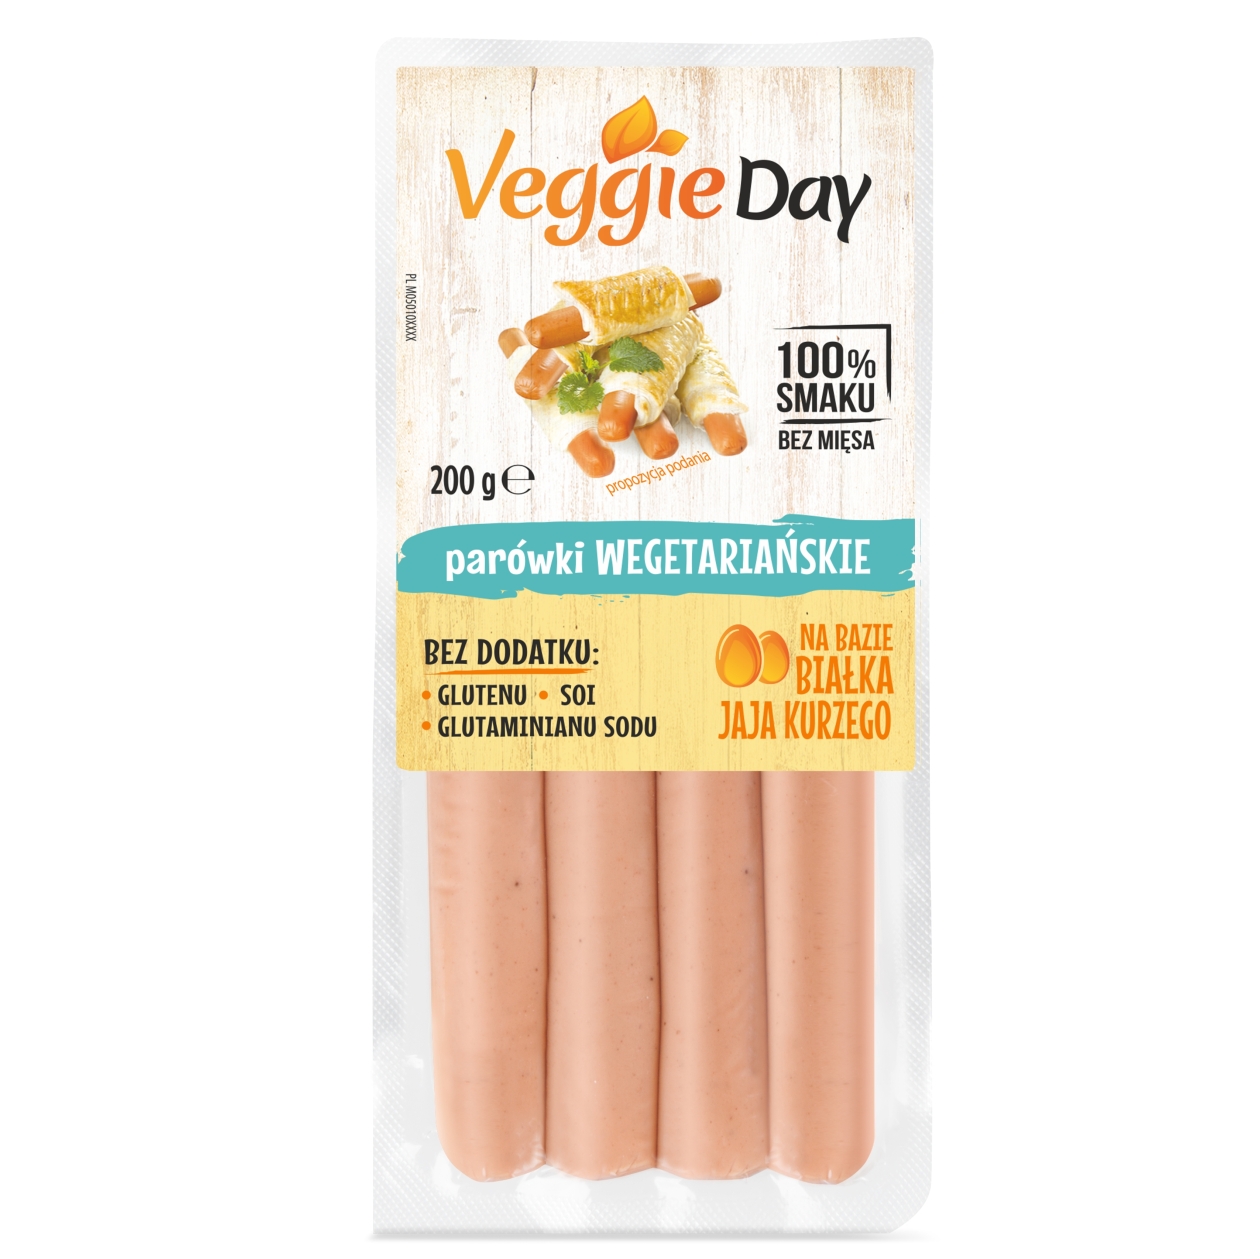 Parówki wegetariańskie • VeggieDay